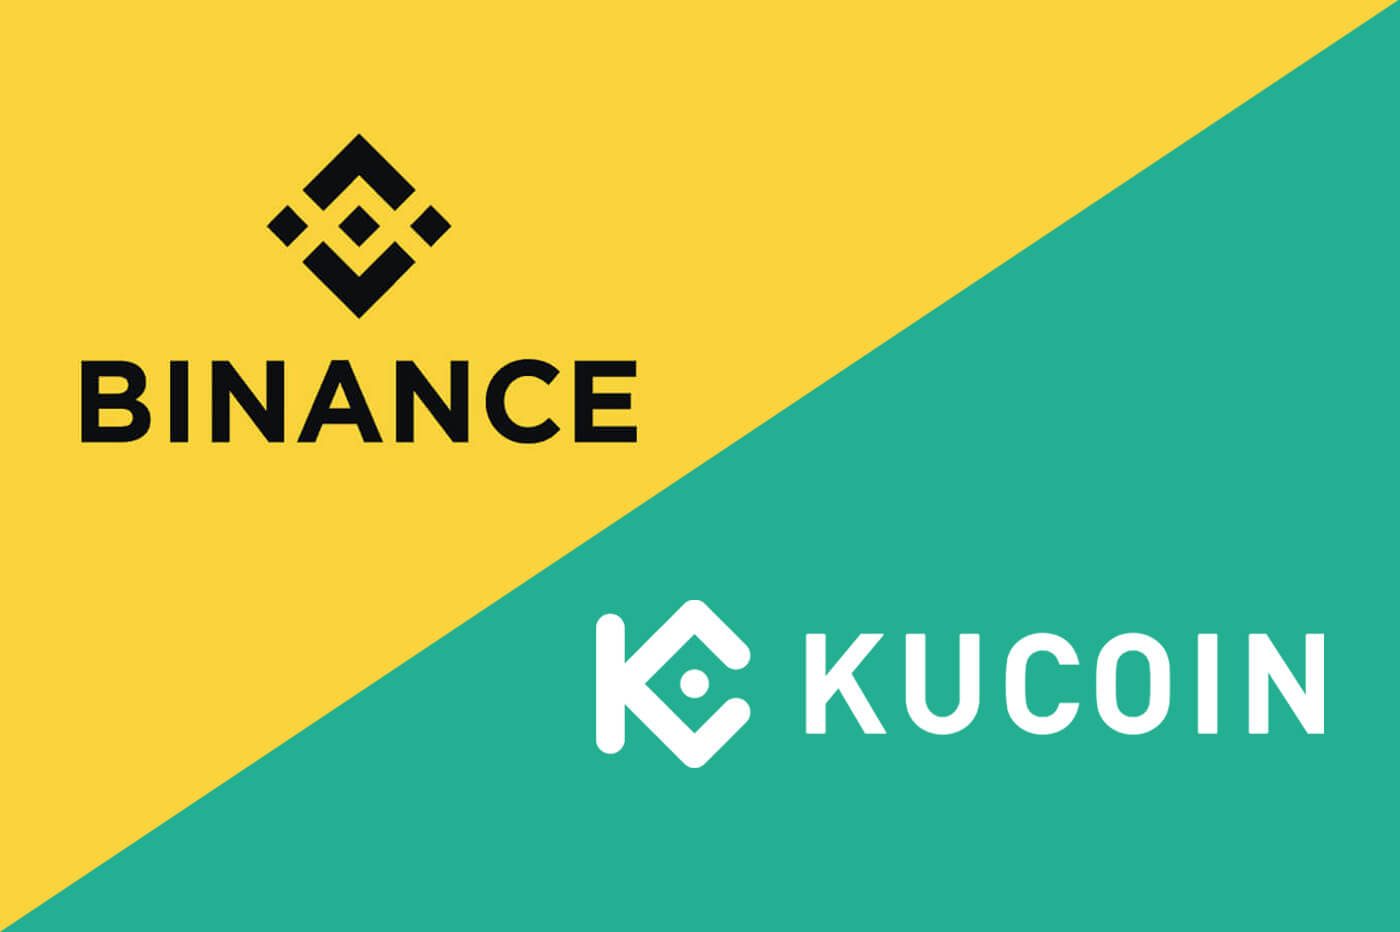 Binance vs Kucoin